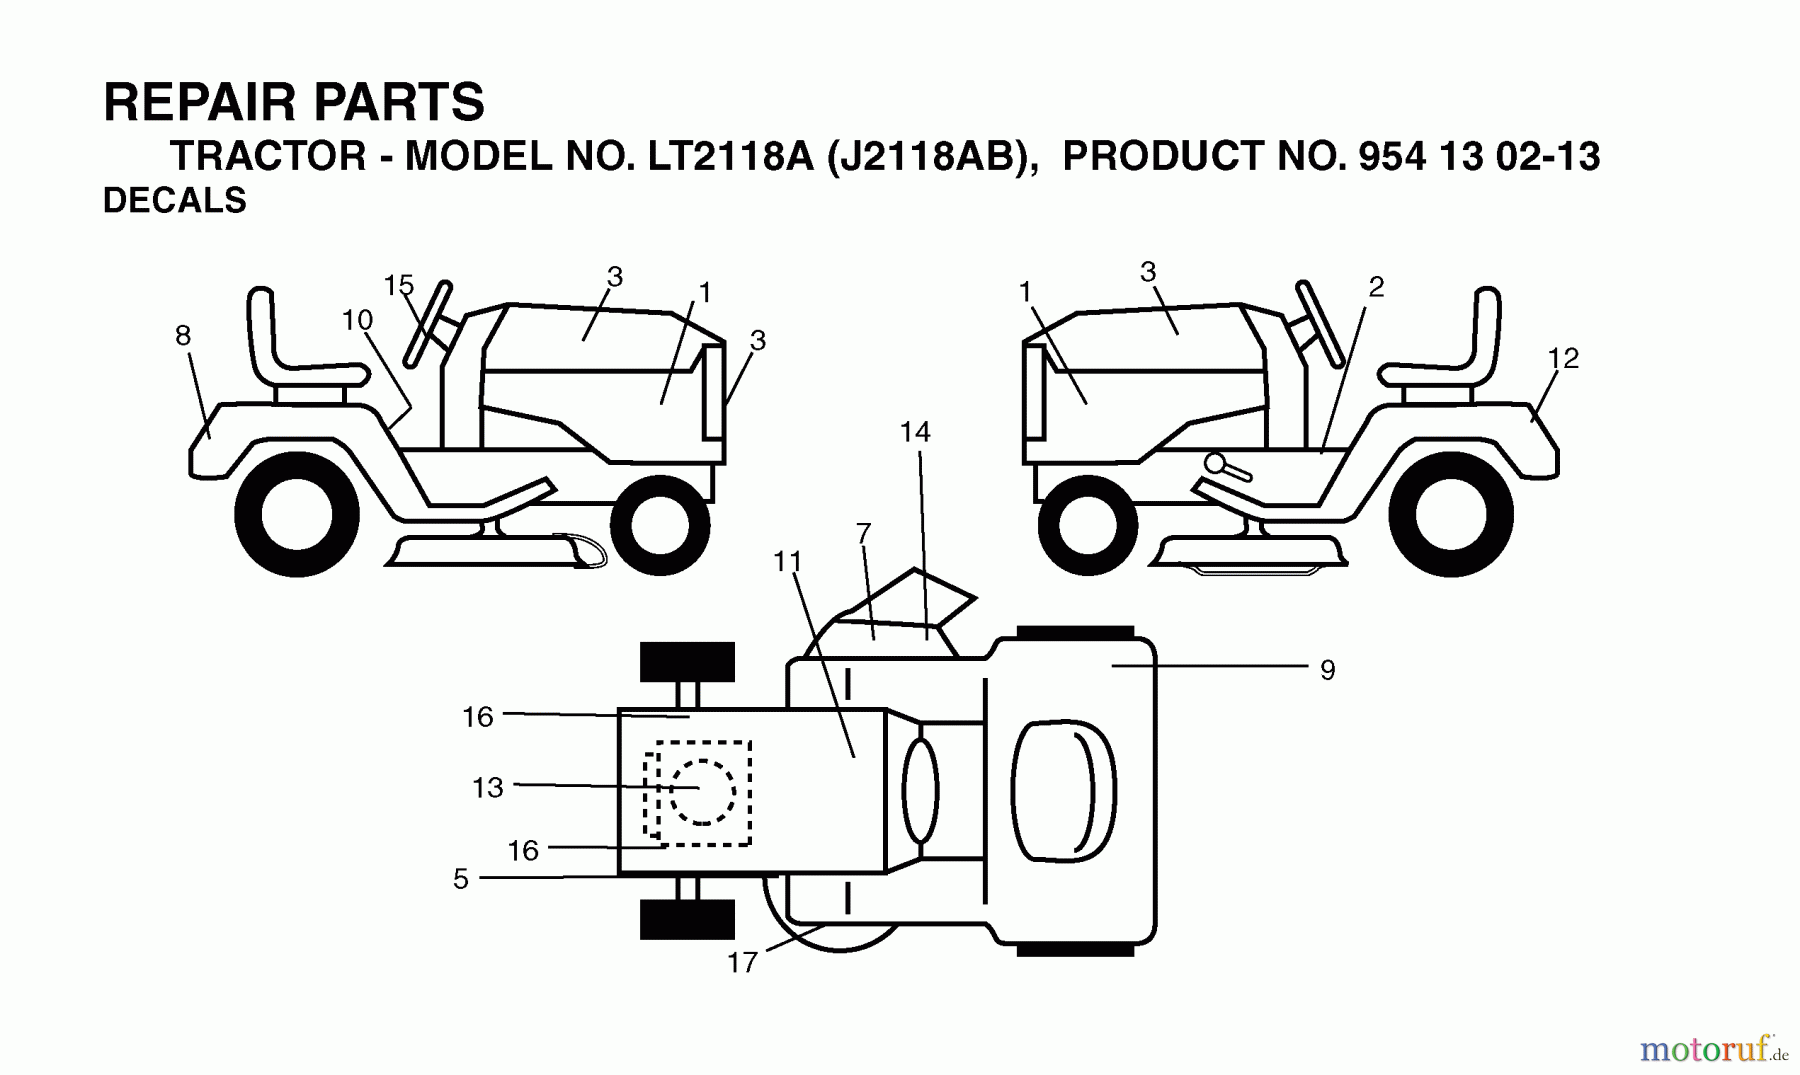  Jonsered Rasen  und Garten Traktoren LT2118 A (J2118AB, 954130213) - Jonsered Lawn & Garden Tractor (2004-06) DECALS